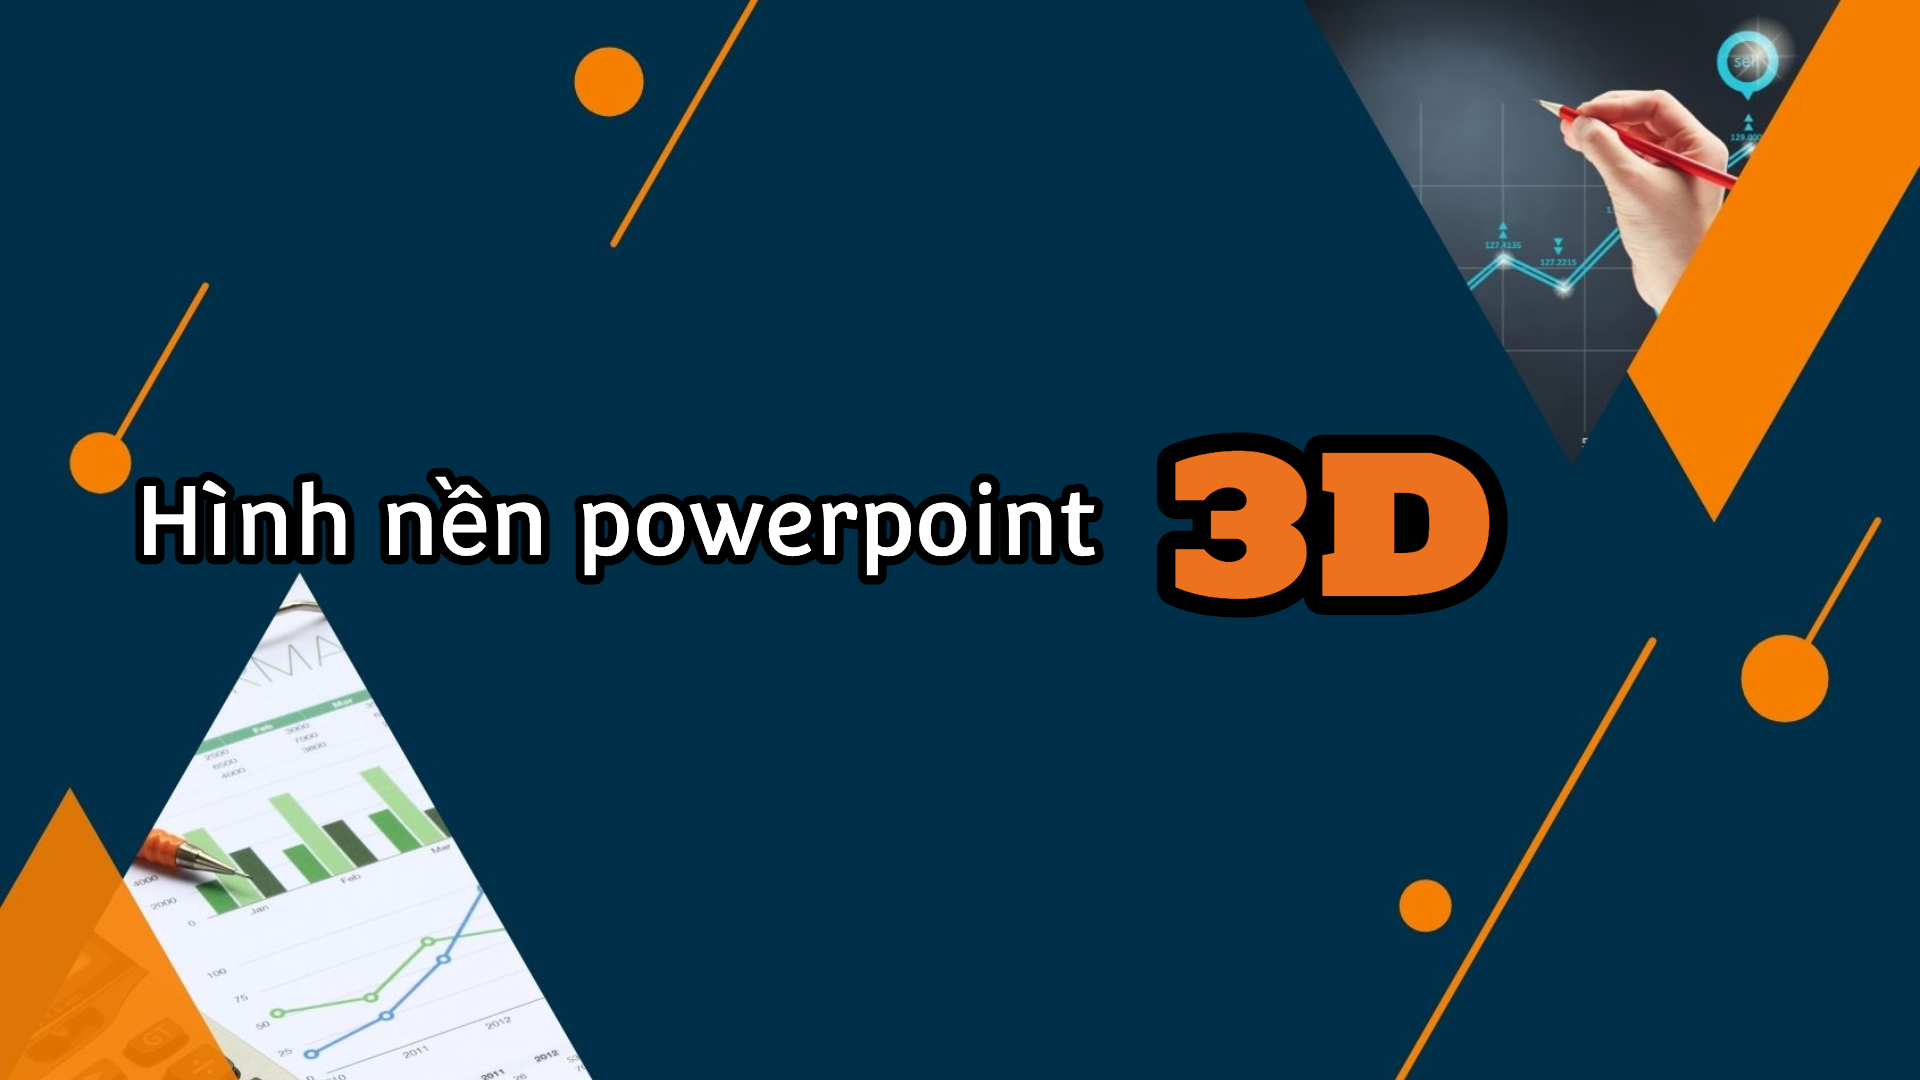 111 Hình nền powerpoint 3D đơn giản, đẹp nhất 2023.